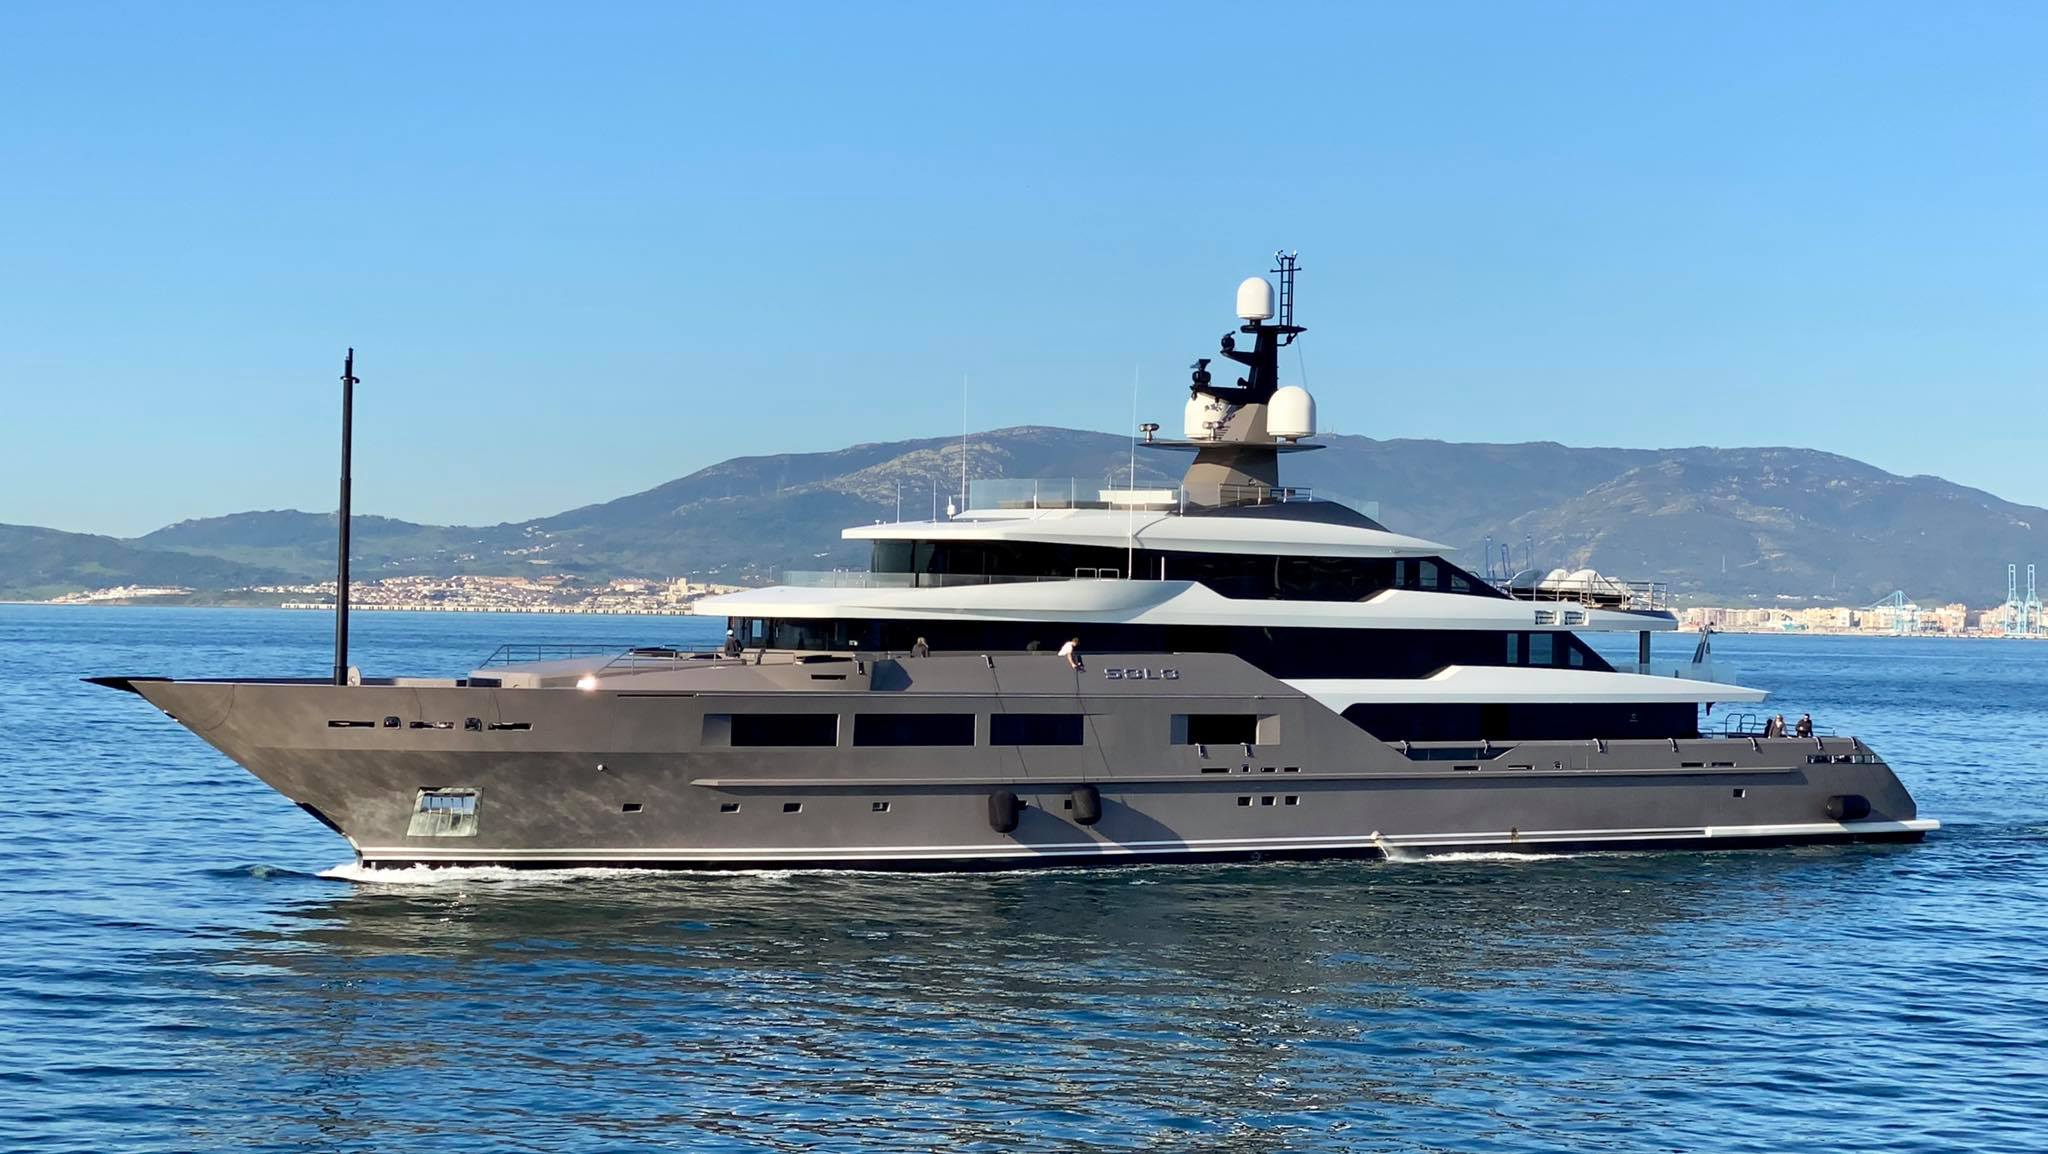 Carlo De Benedetti’s yacht Solo in Gibraltar